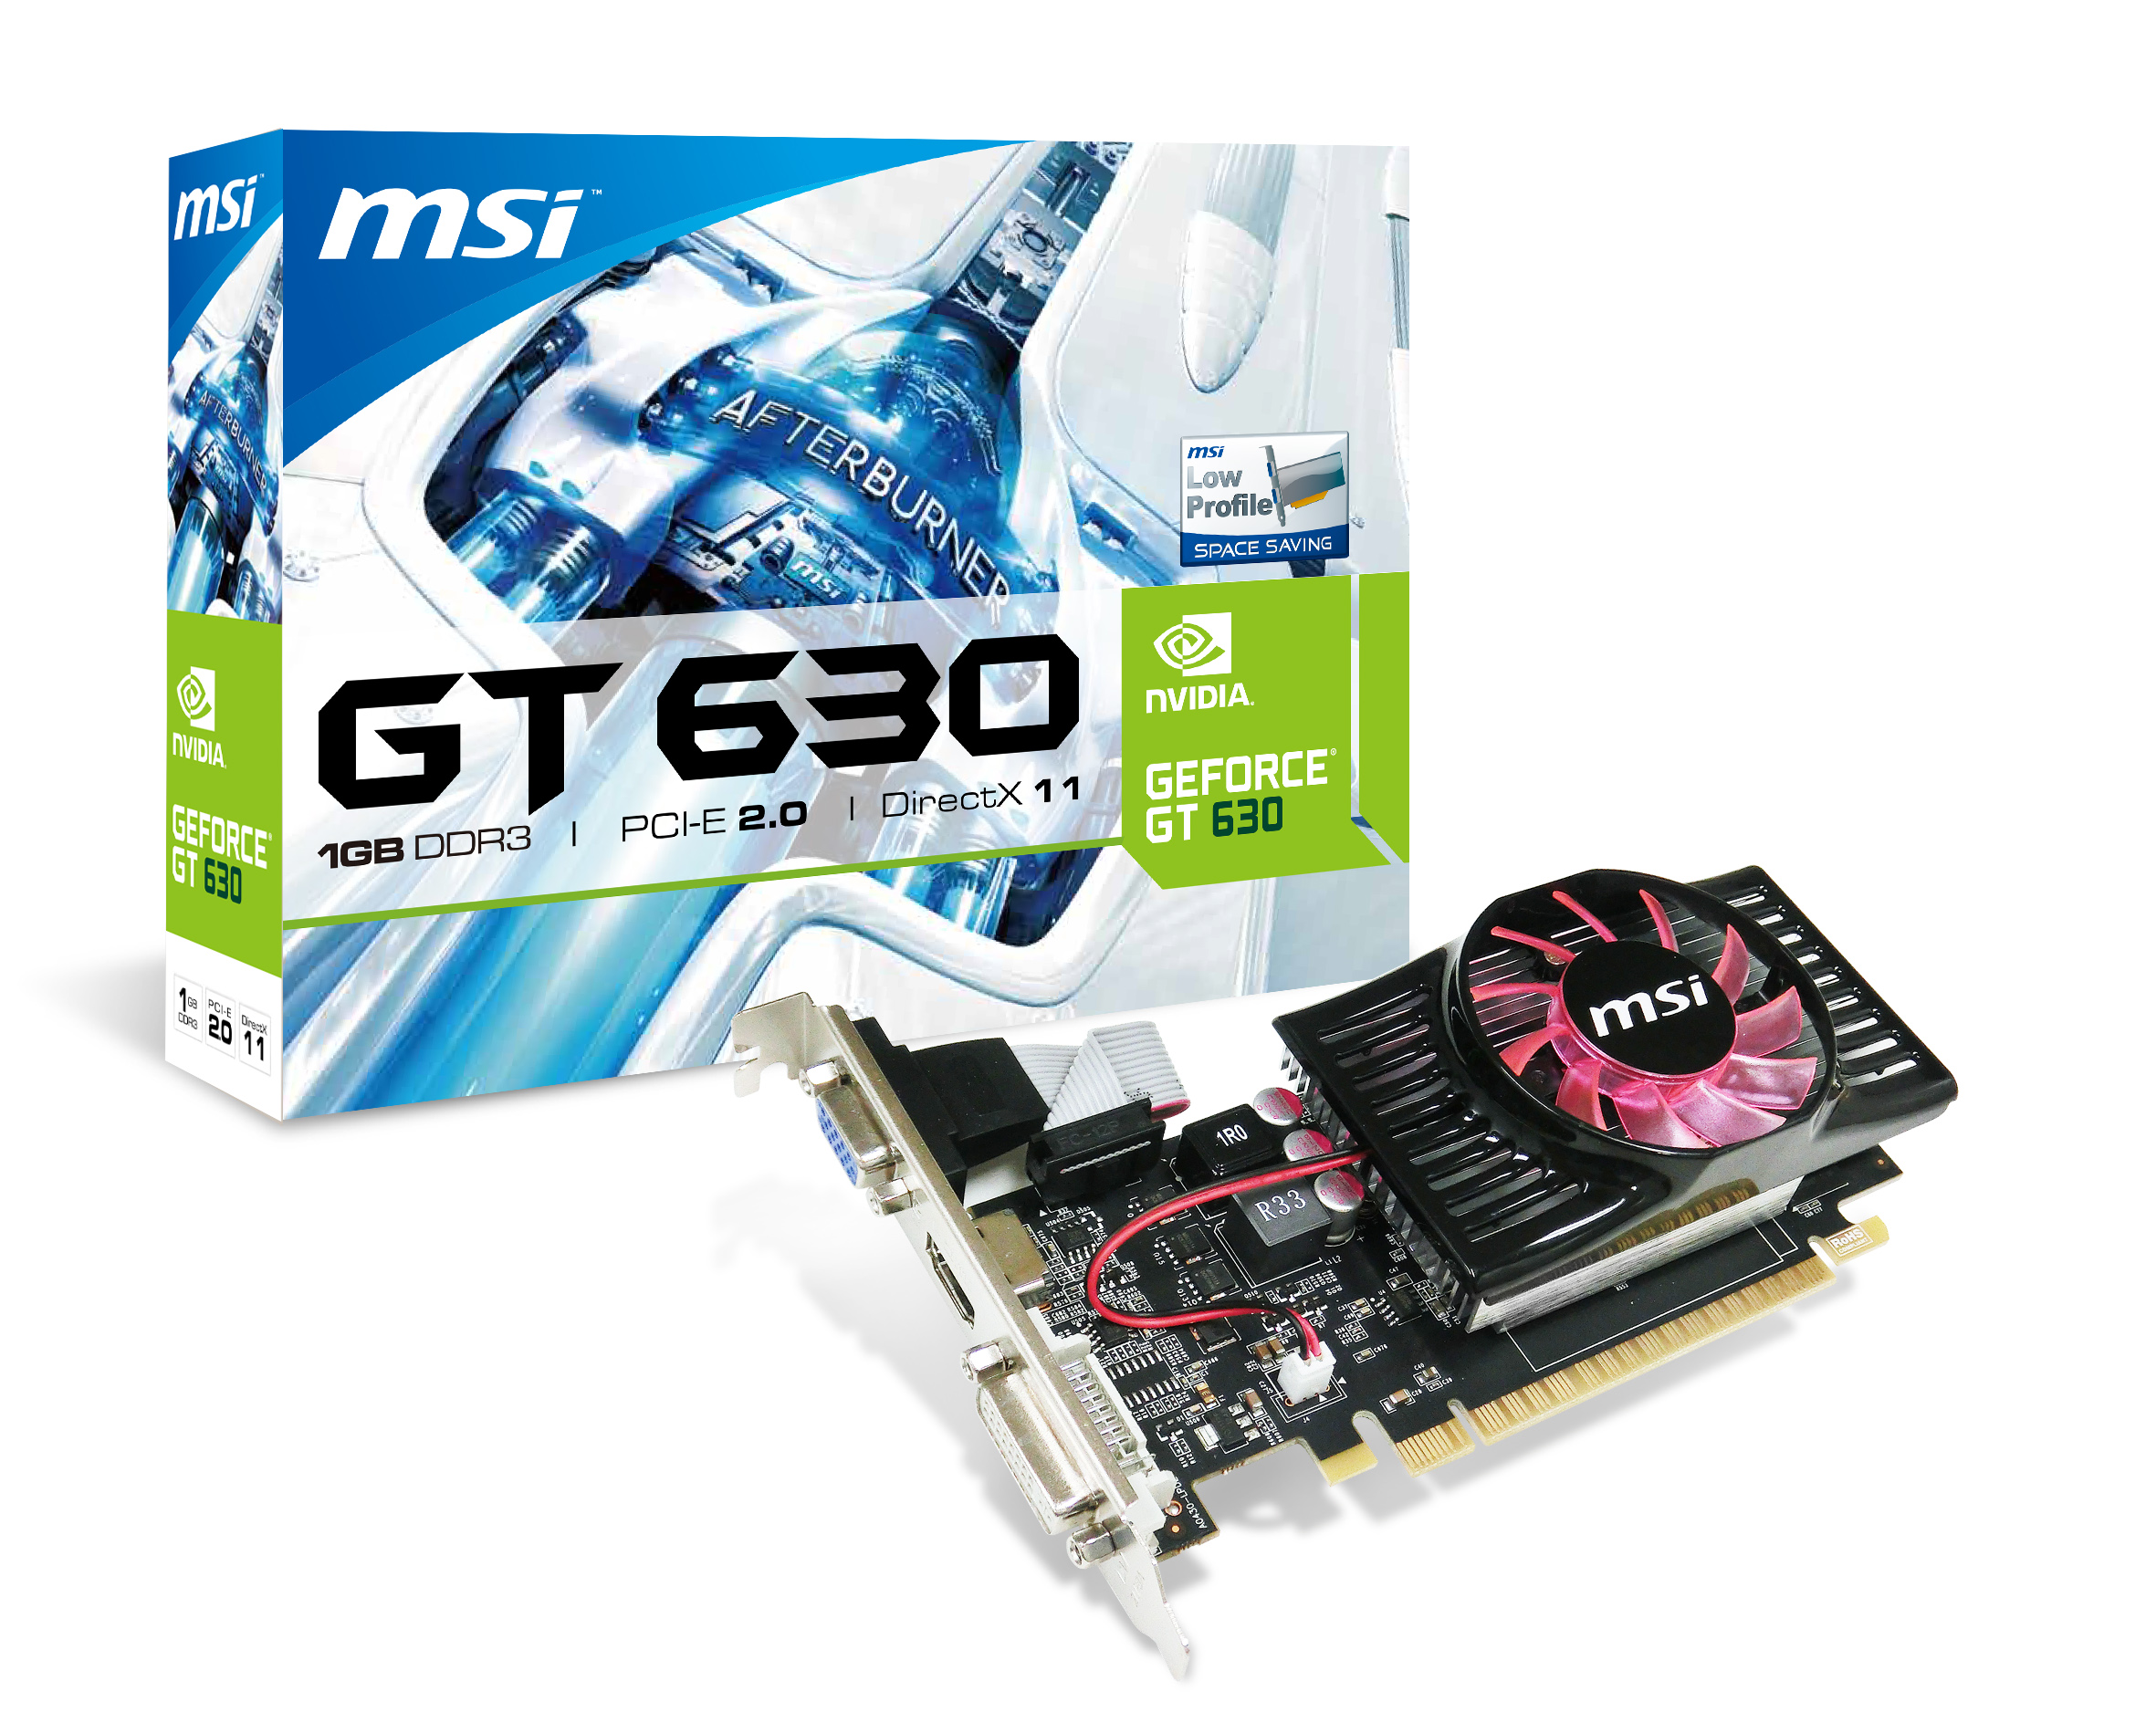 Immagine pubblicata in relazione al seguente contenuto: MSI commercializza la video card GeForce GT 630 low-profile | Nome immagine: news19651_MSI-GeForce-GT-630-low-profile_3.jpg